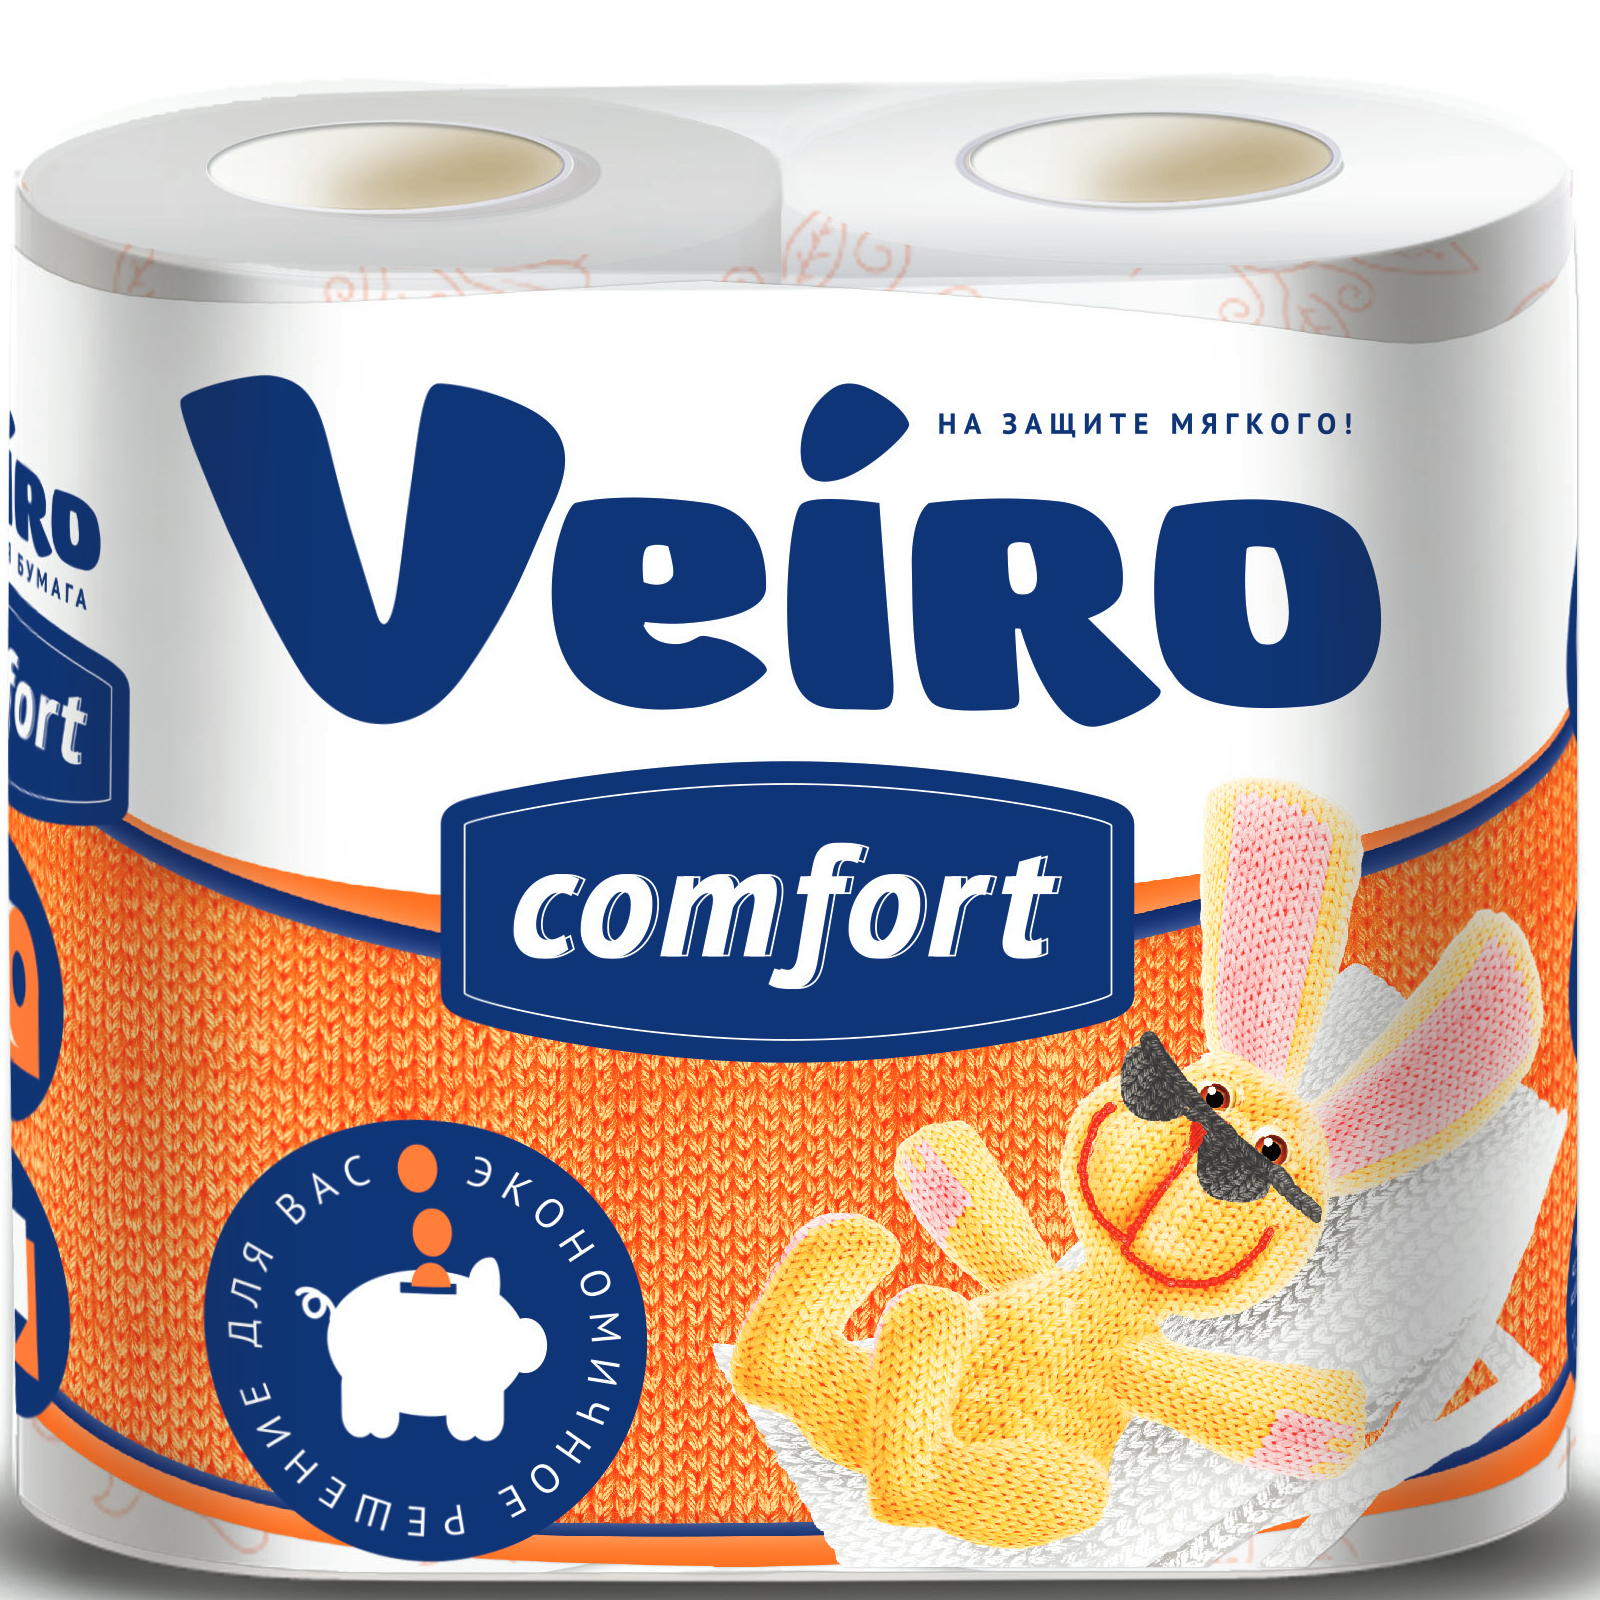 Бумага туалетная Linia Veiro comfort 2 слоя, 4 рулона, 17,5 м трехслойная туалетная бумага veiro